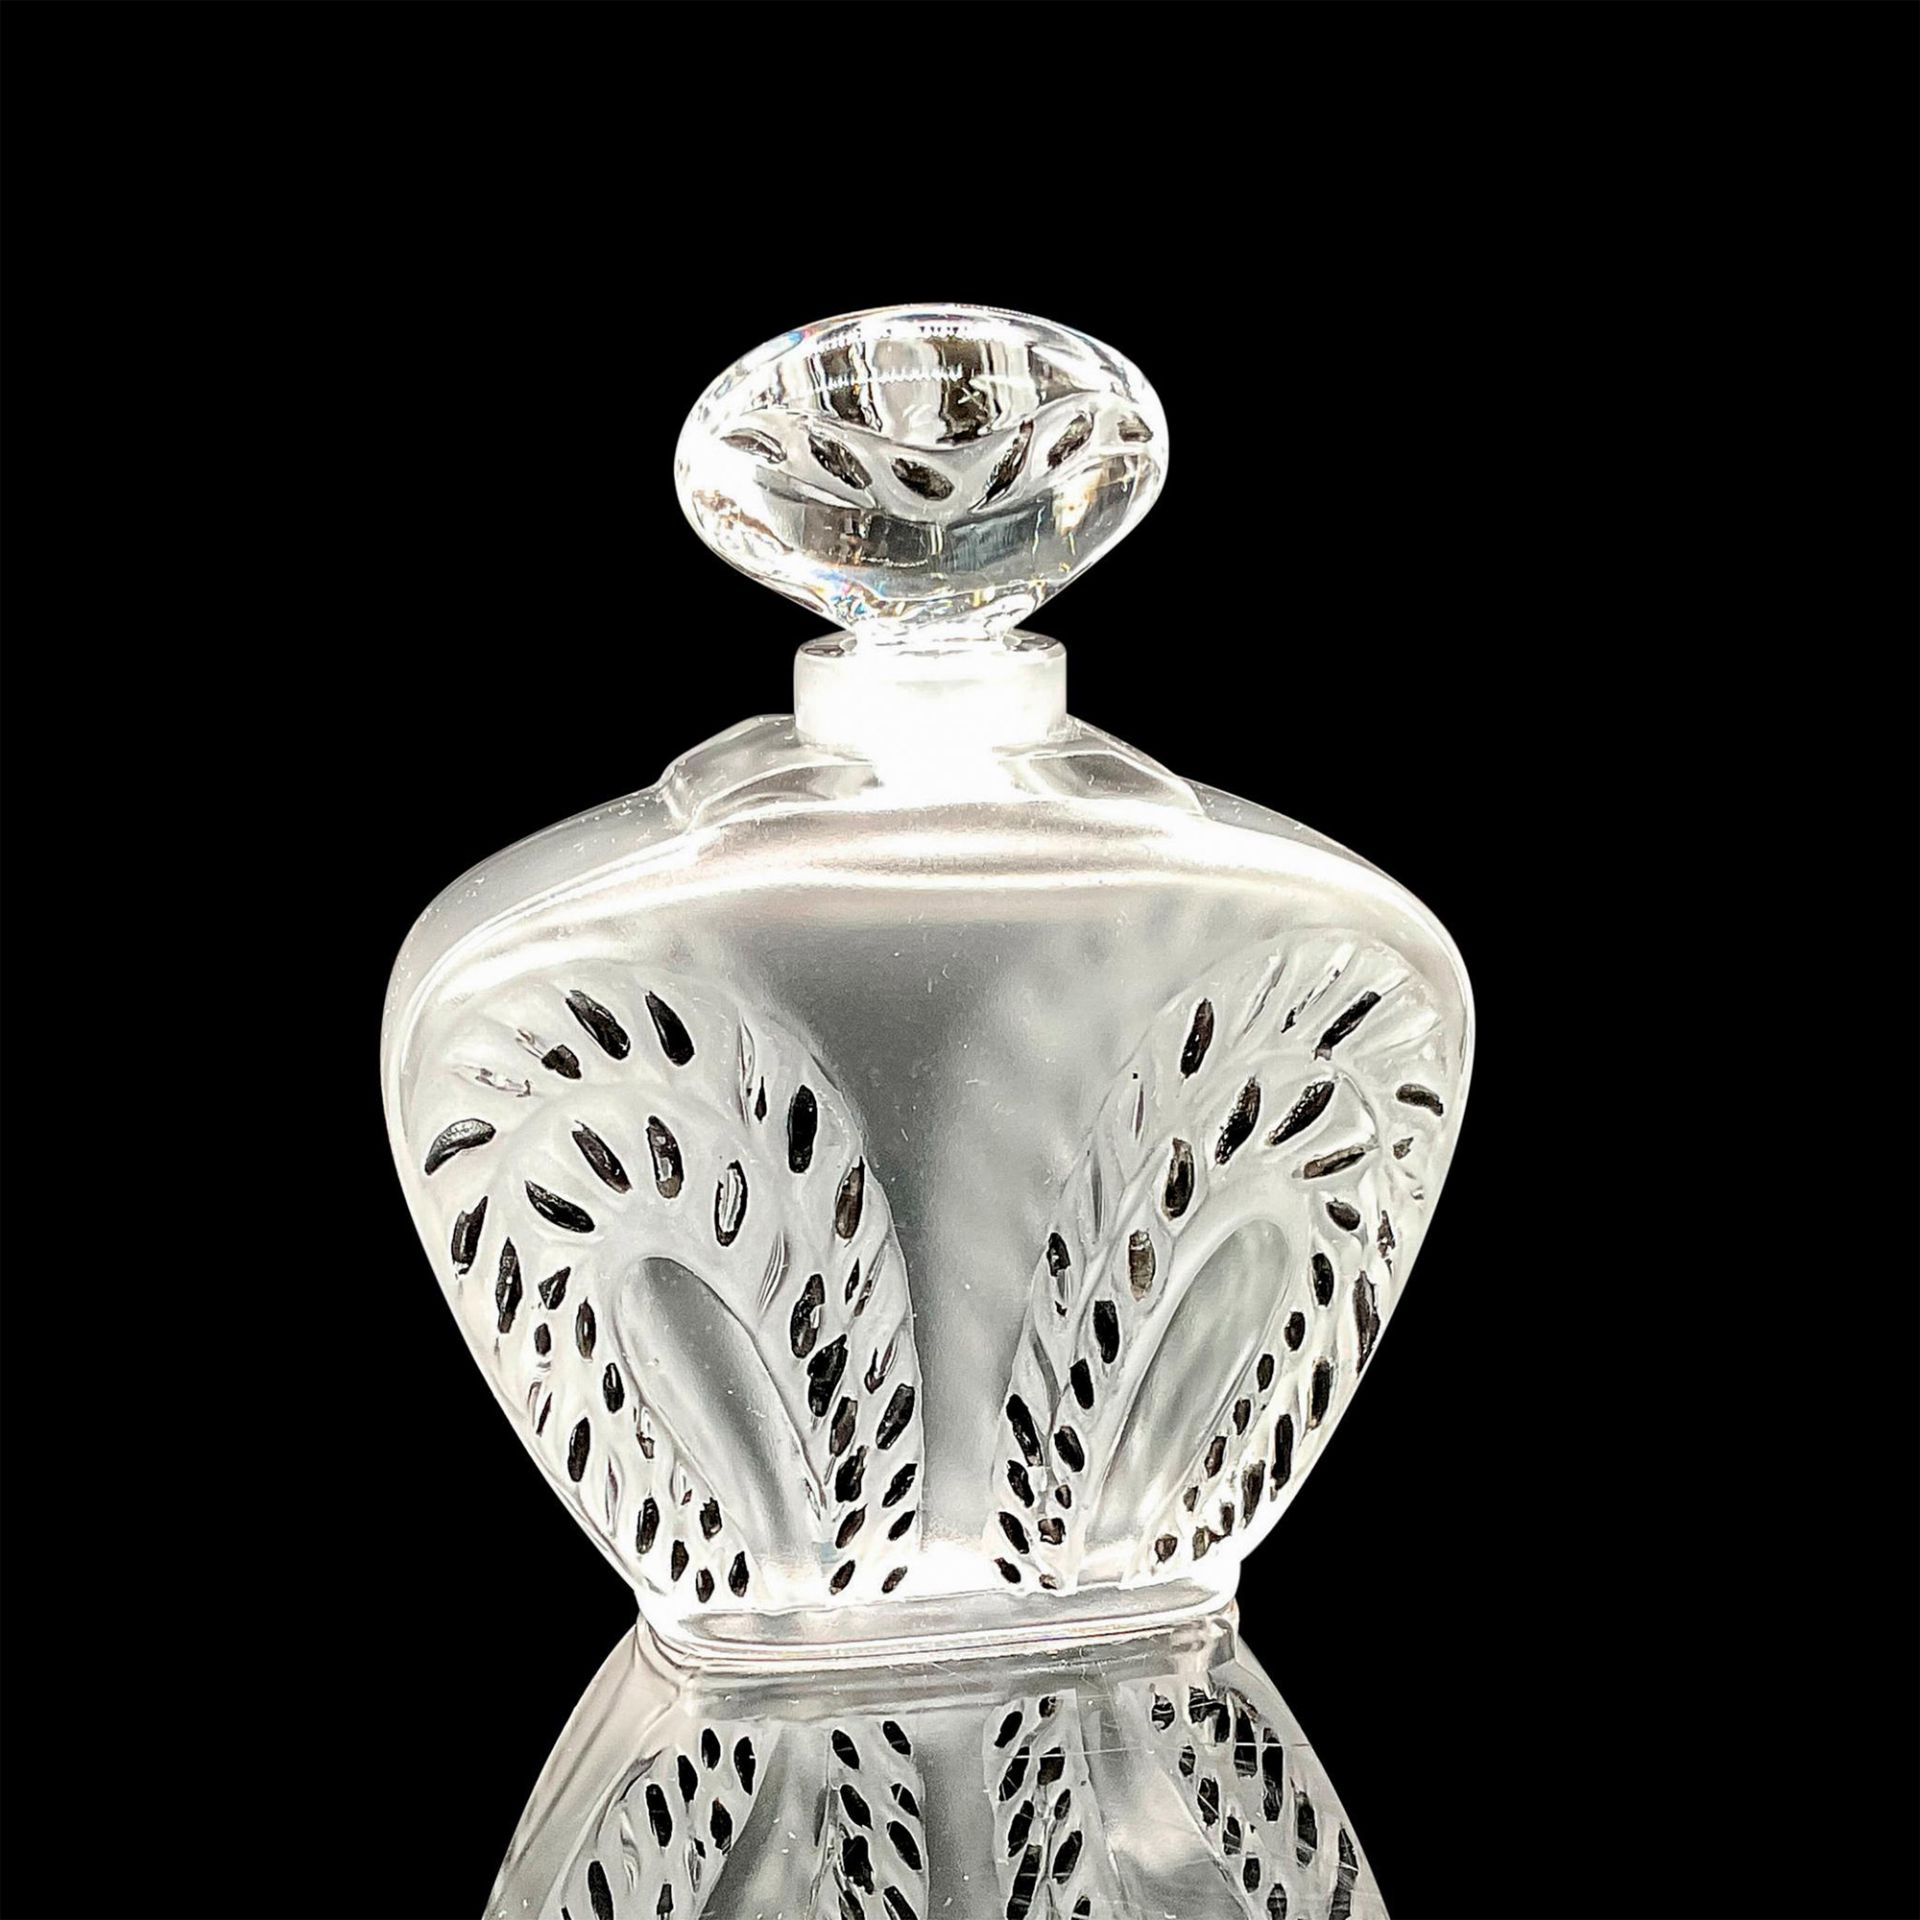 Lalique Crystal Perfume Bottle Singapore - Image 2 of 3